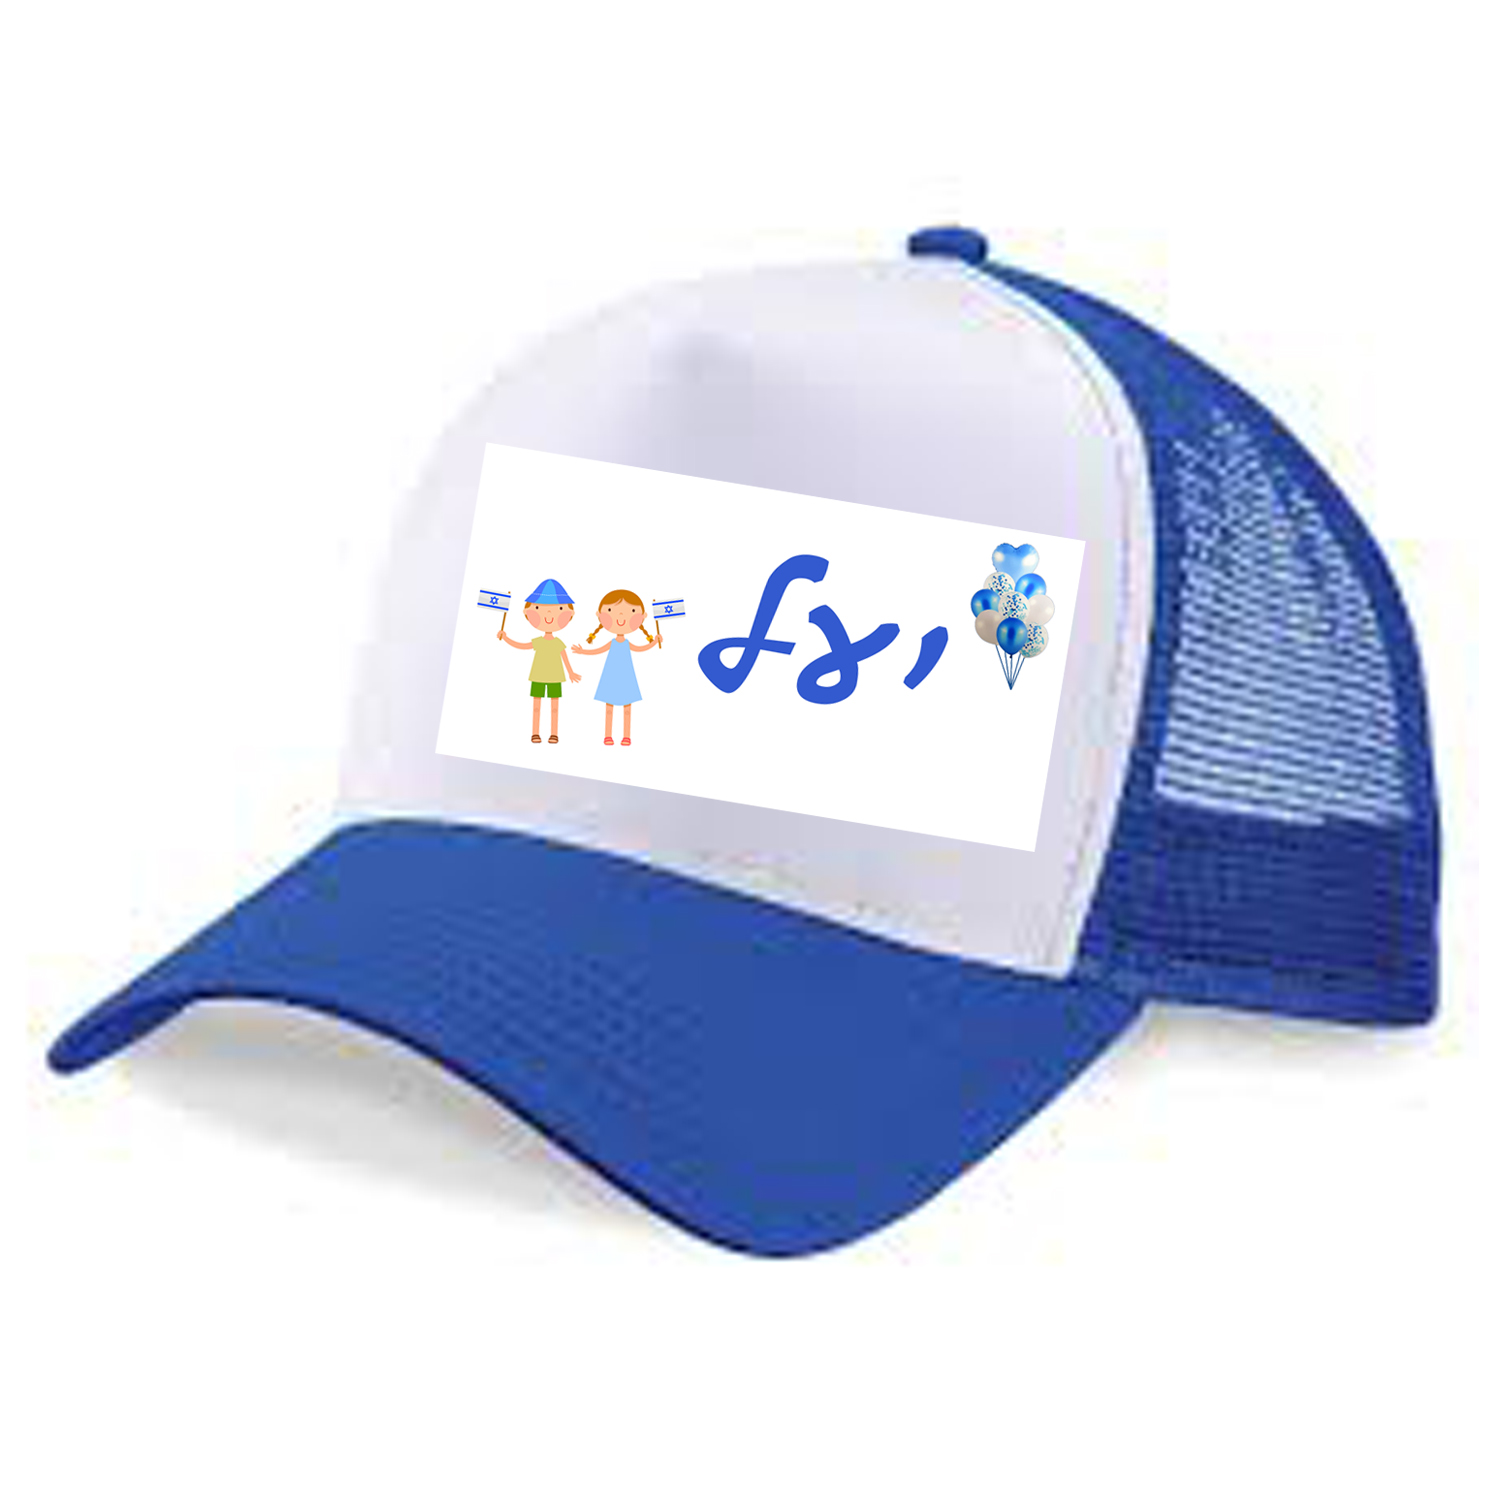 כובע בעיצוב חגיגי ליום העצמאות